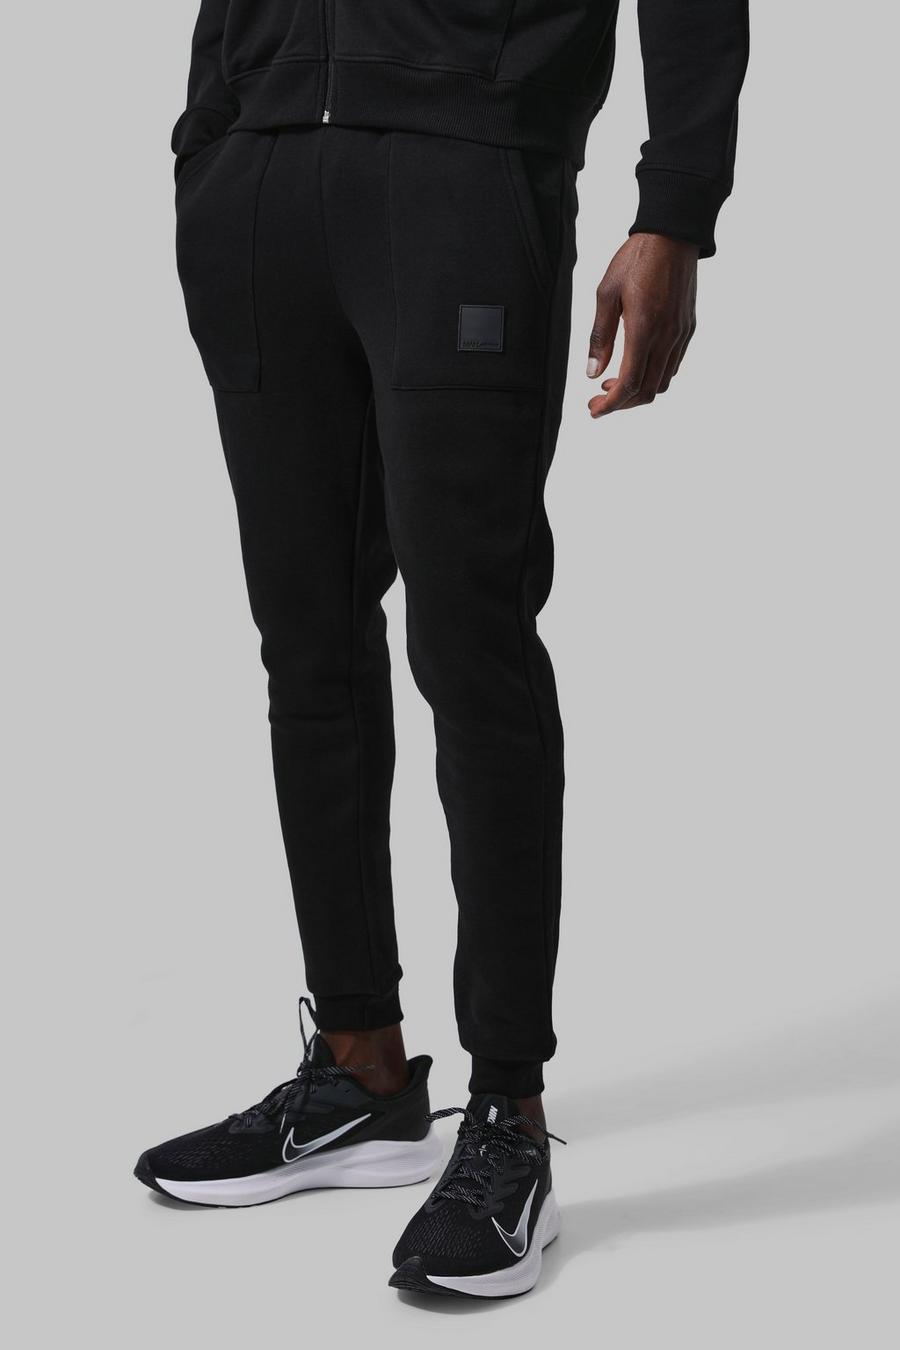 Pantalón deportivo MAN Active deportivo con bolsillos, Black negro